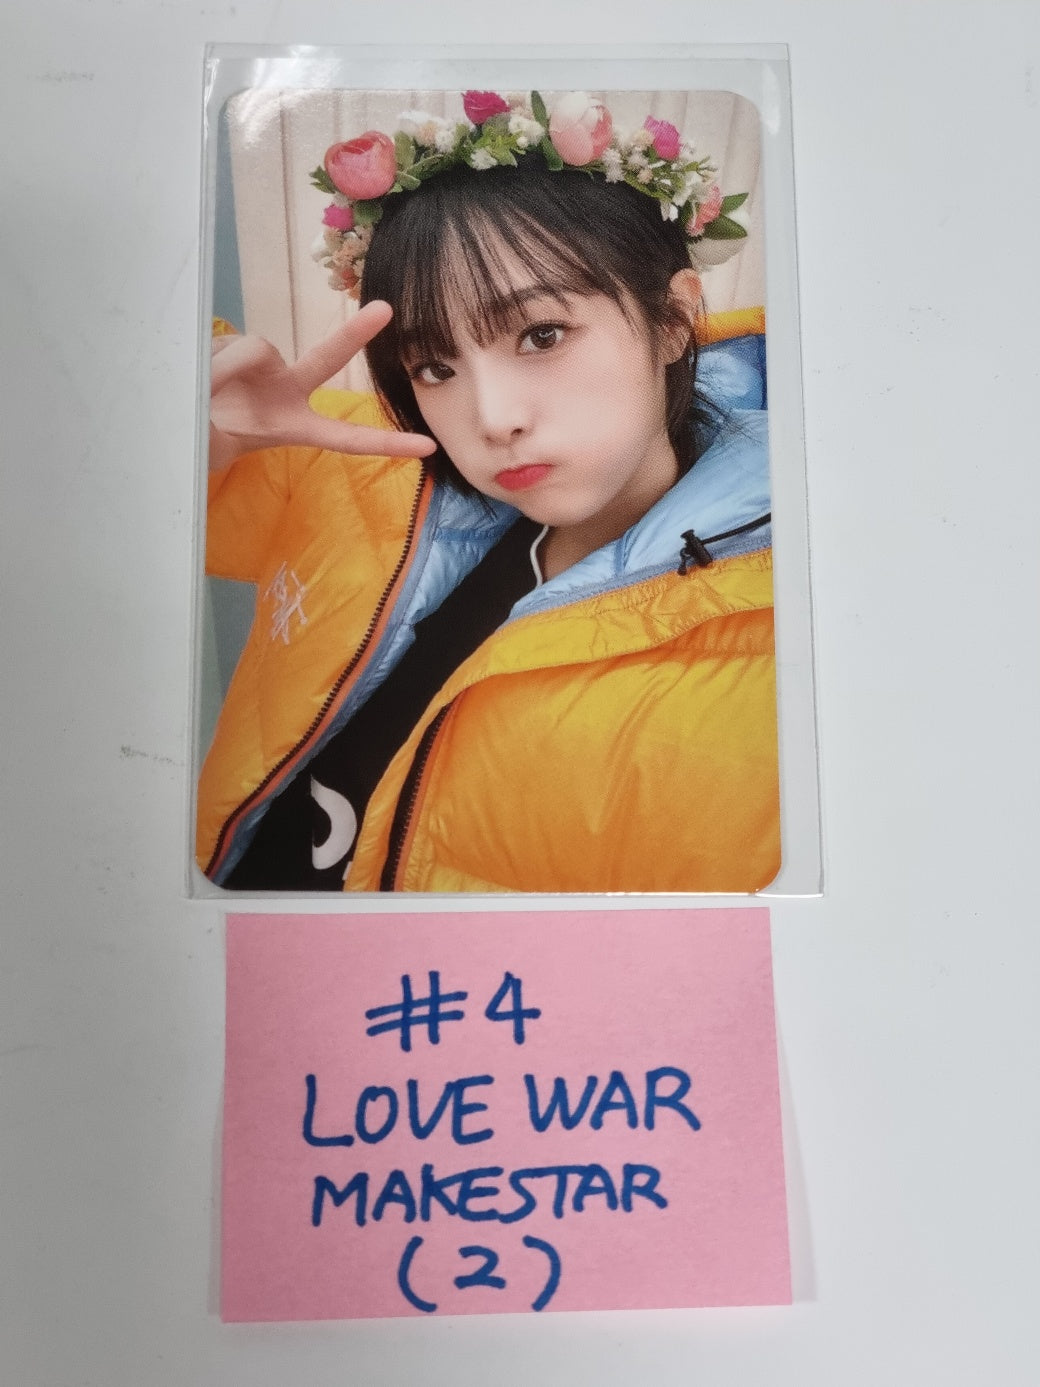 YENA "Love War" - Makestar Fansign Event Photocard Round 3